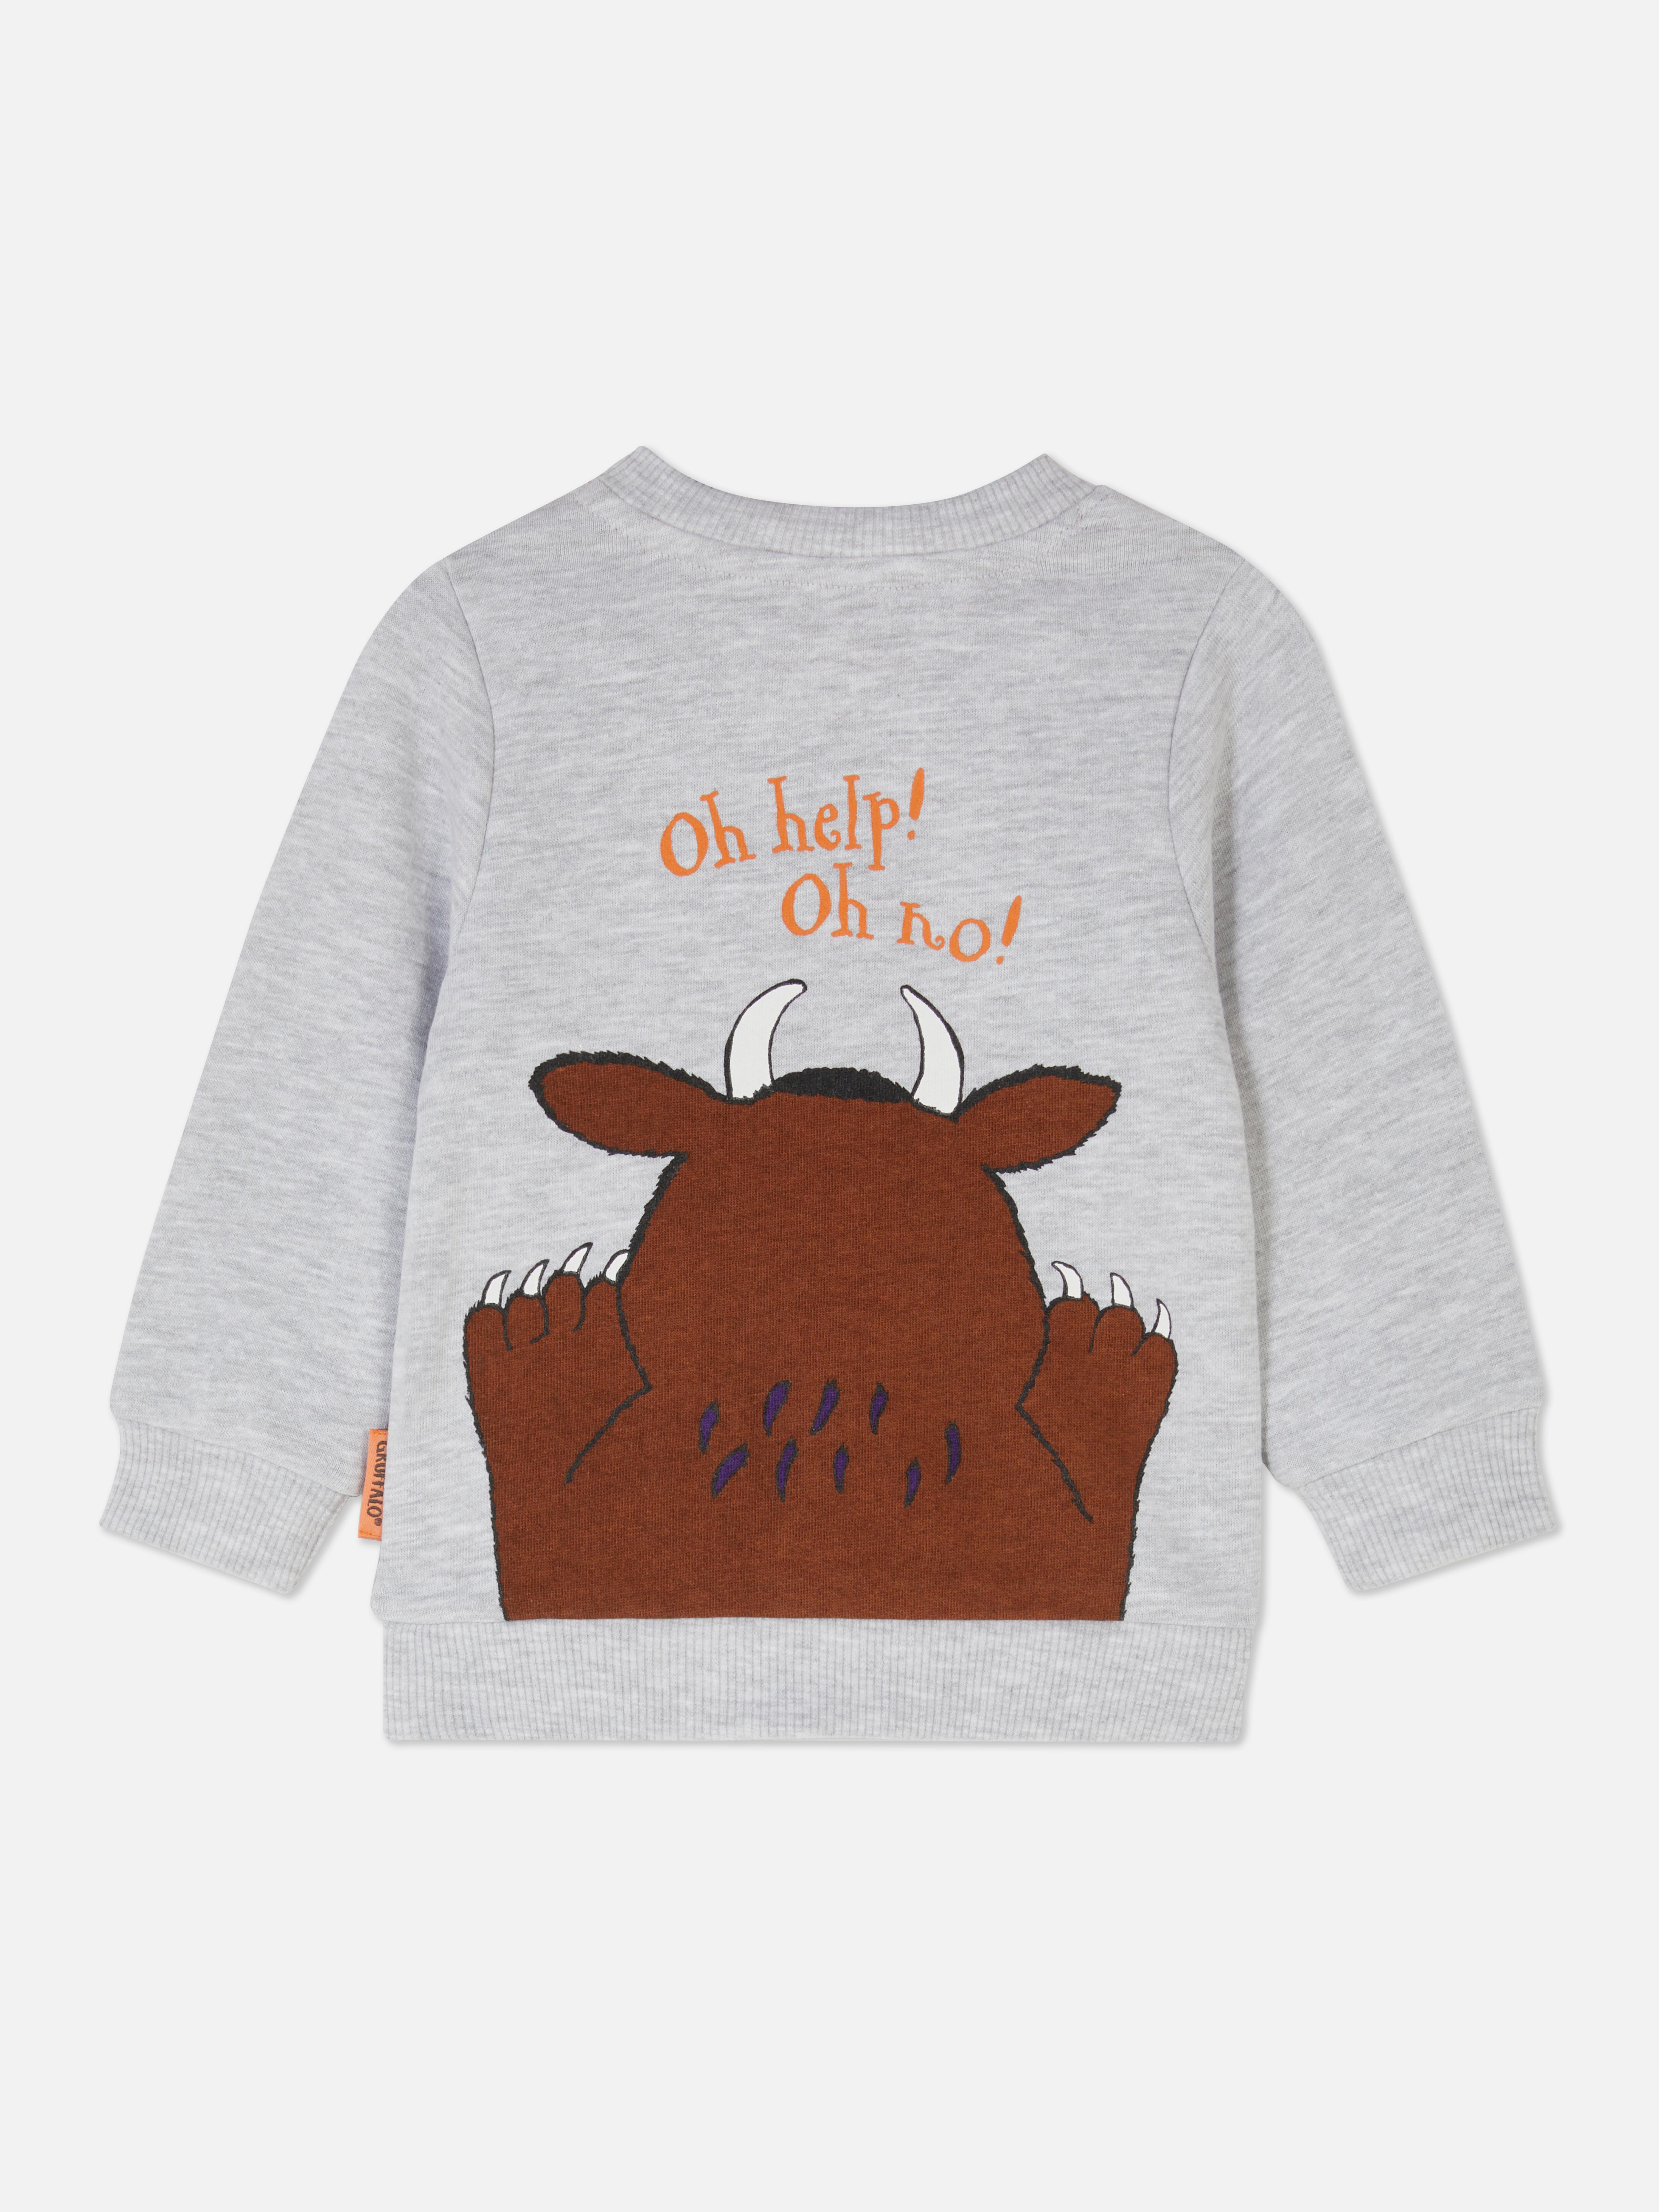 The Gruffalo Sweatshirt